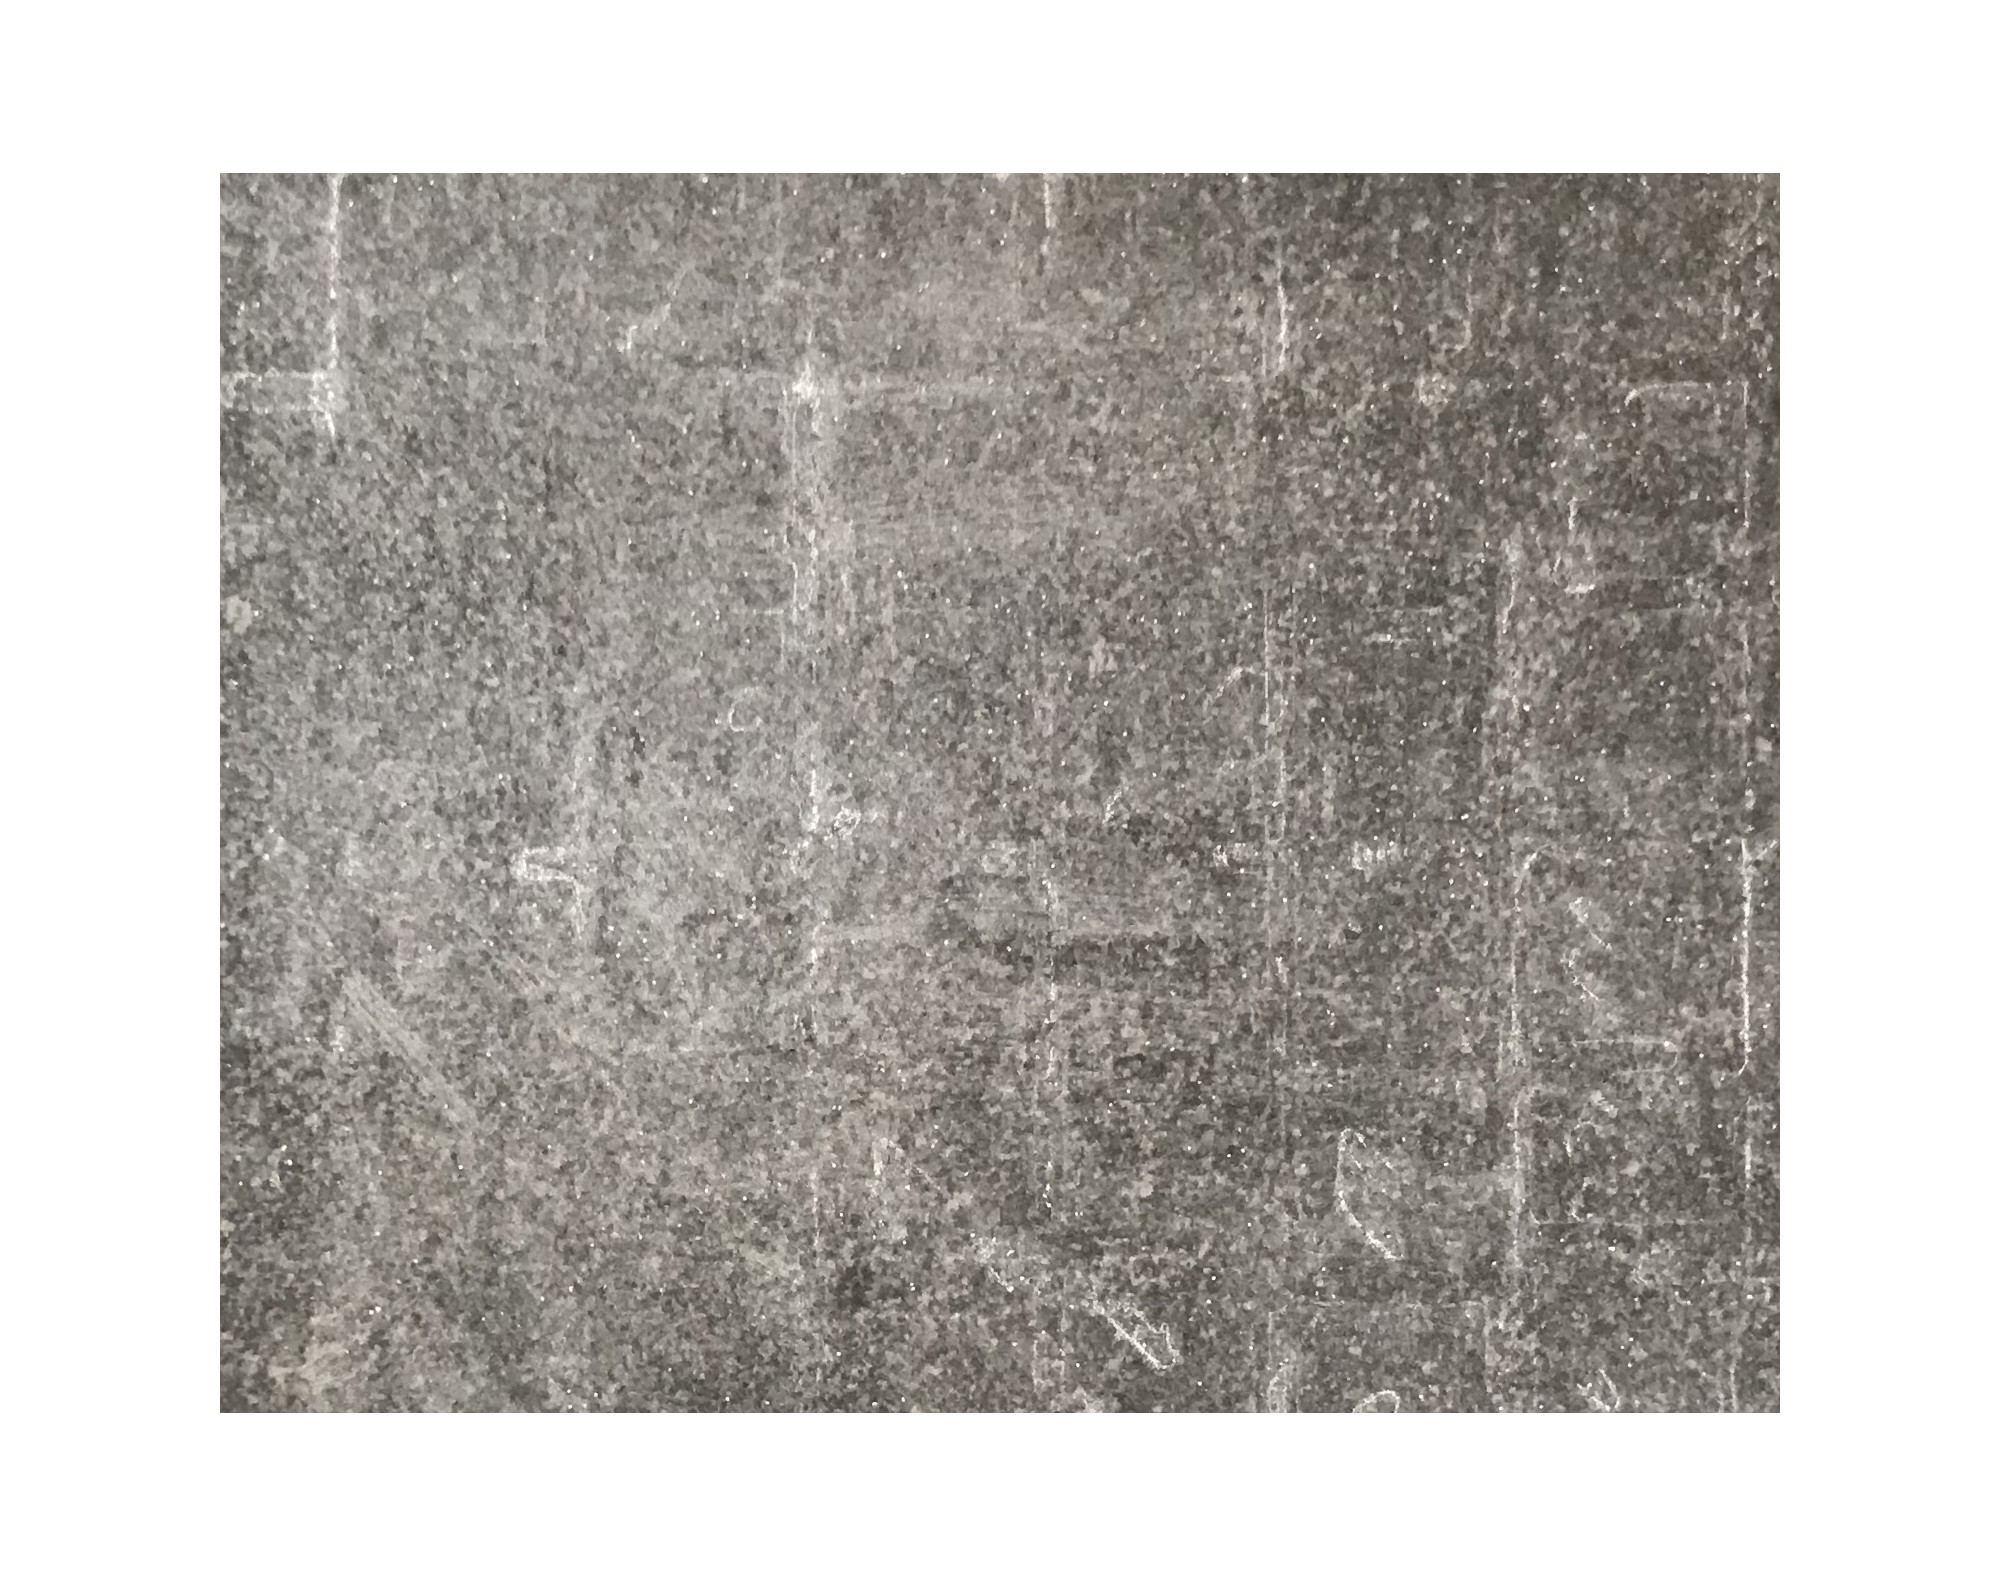 Harmo roc maranelloset, keramiek-serie, ovaal d: 6,00mx12,60m, zand zwart, keramisch porselein